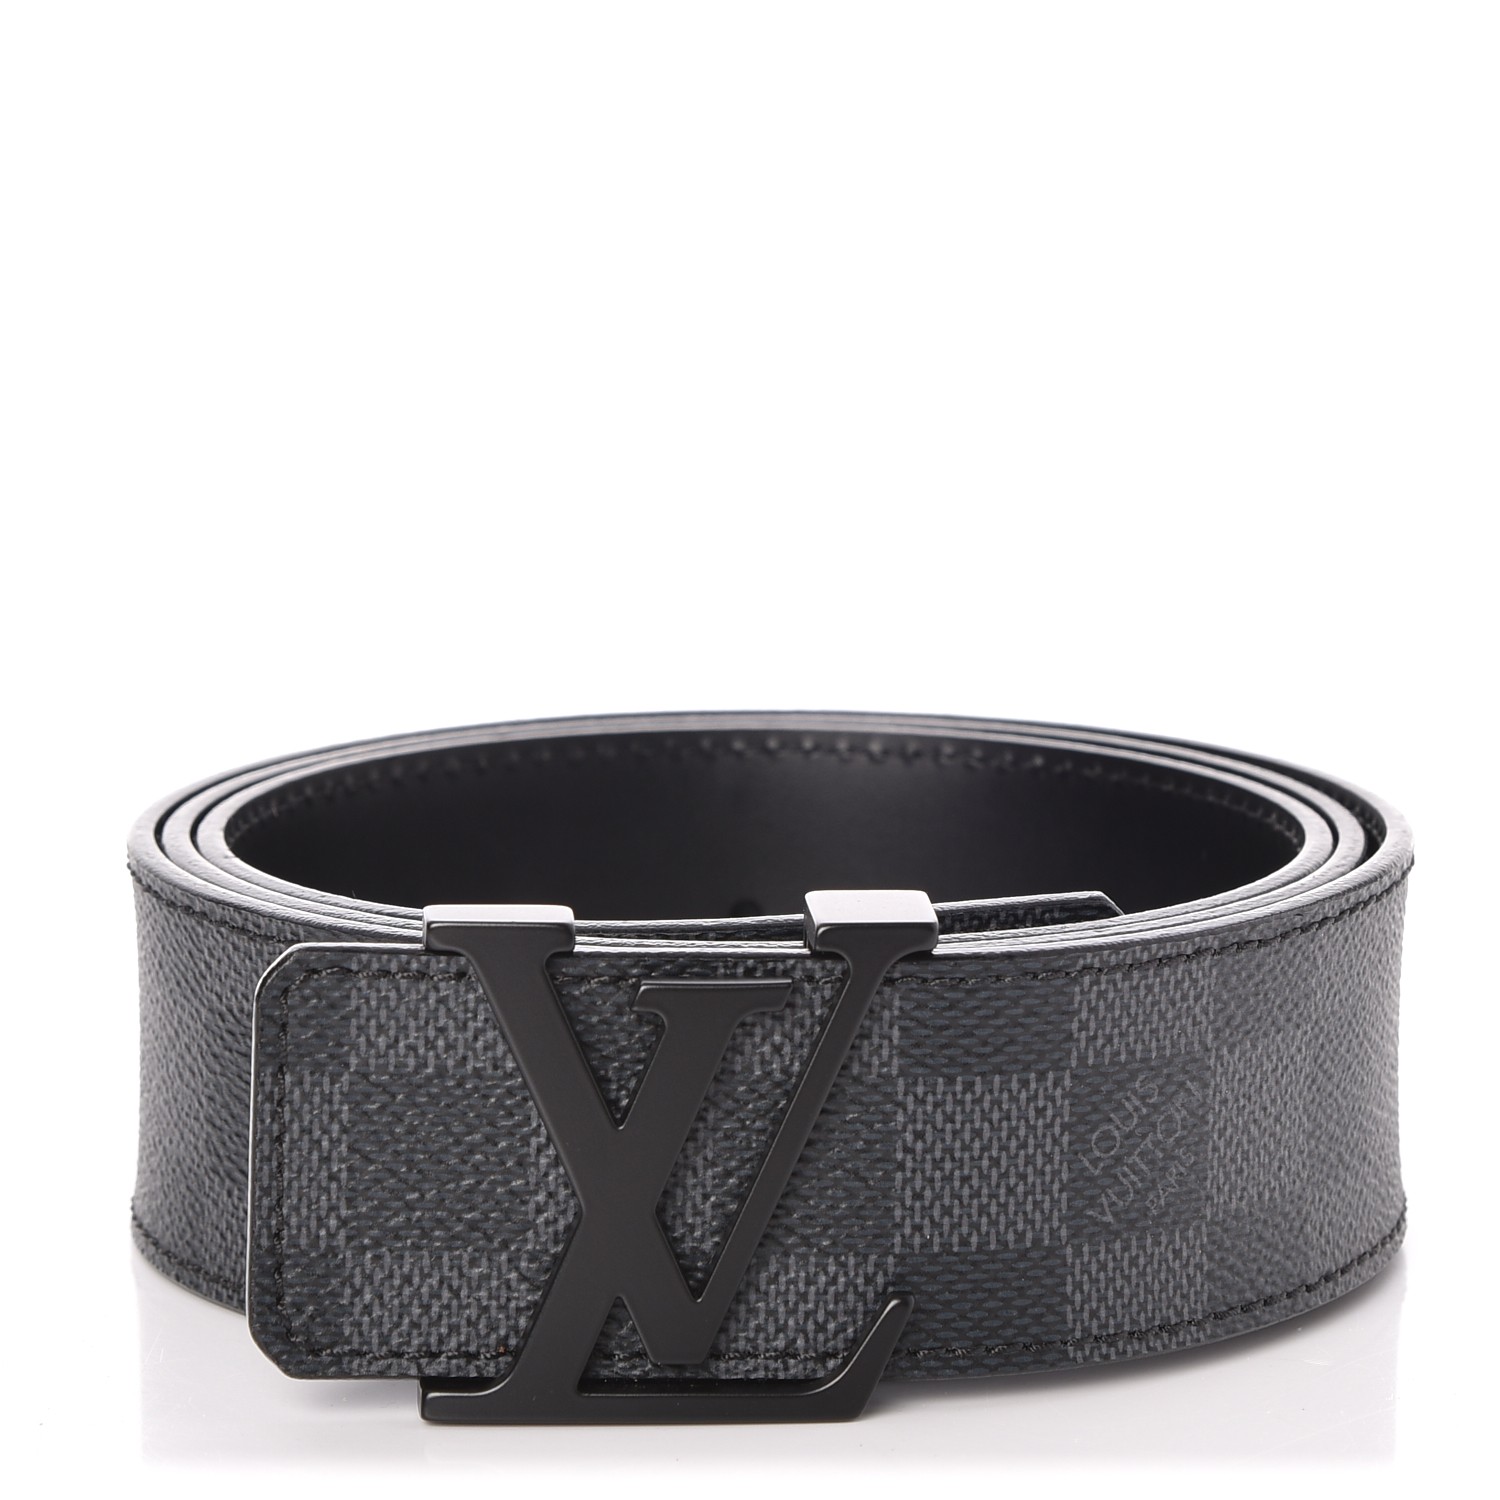 Louis Vuitton Damier Graphite Initials Belt Size 100 CM Louis Vuitton